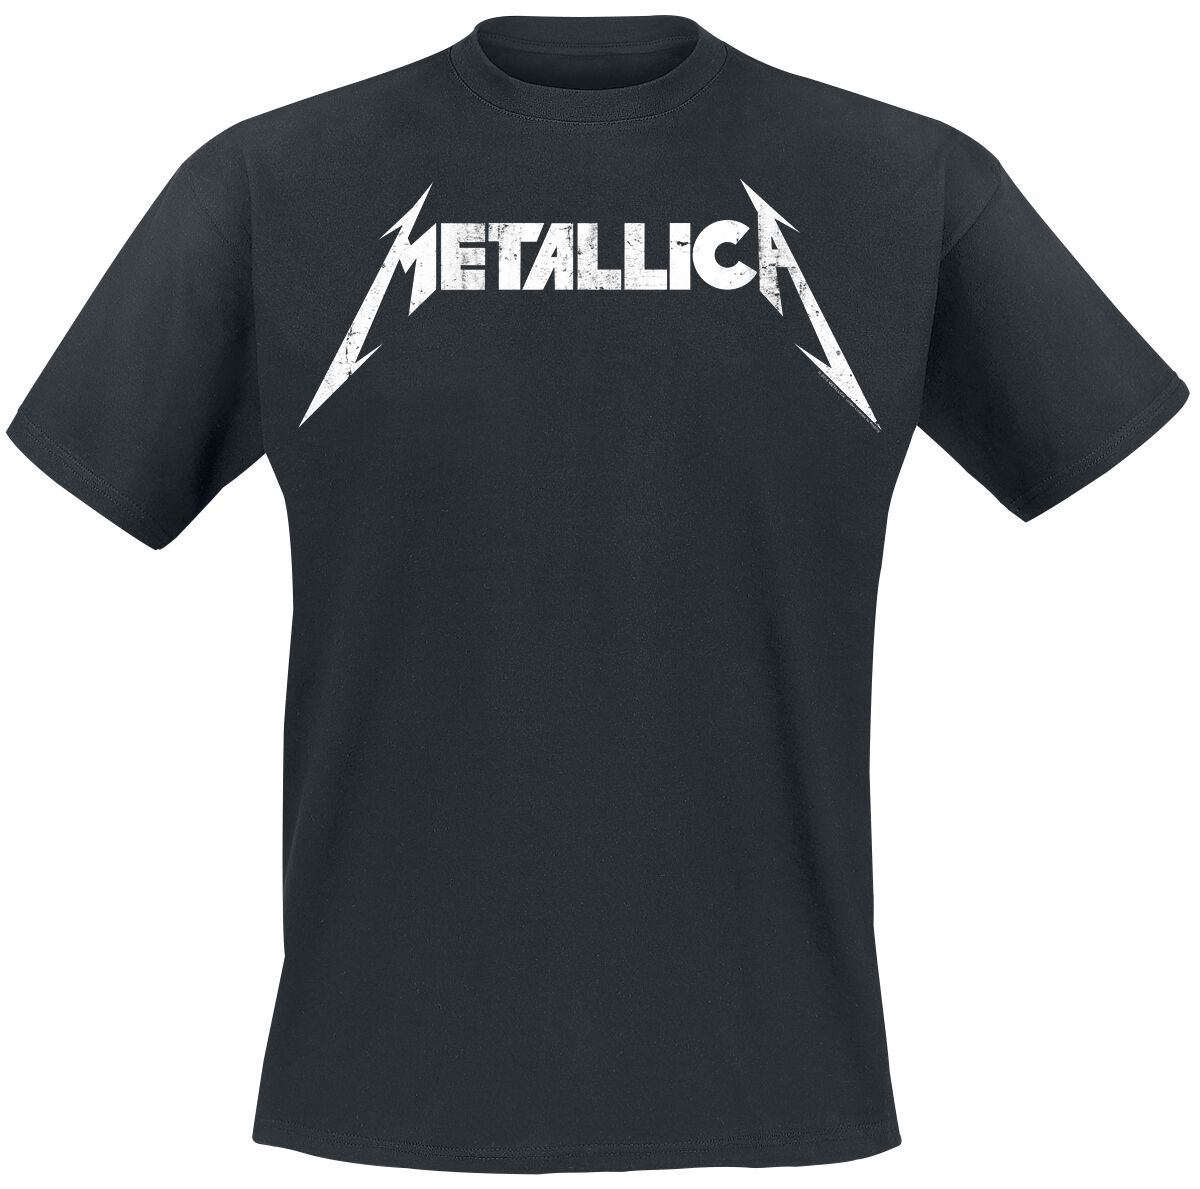 Metallica T-Shirt - Textured Logo - S bis 5XL - für Männer - Größe 3XL - schwarz  - Lizenziertes Merchandise!